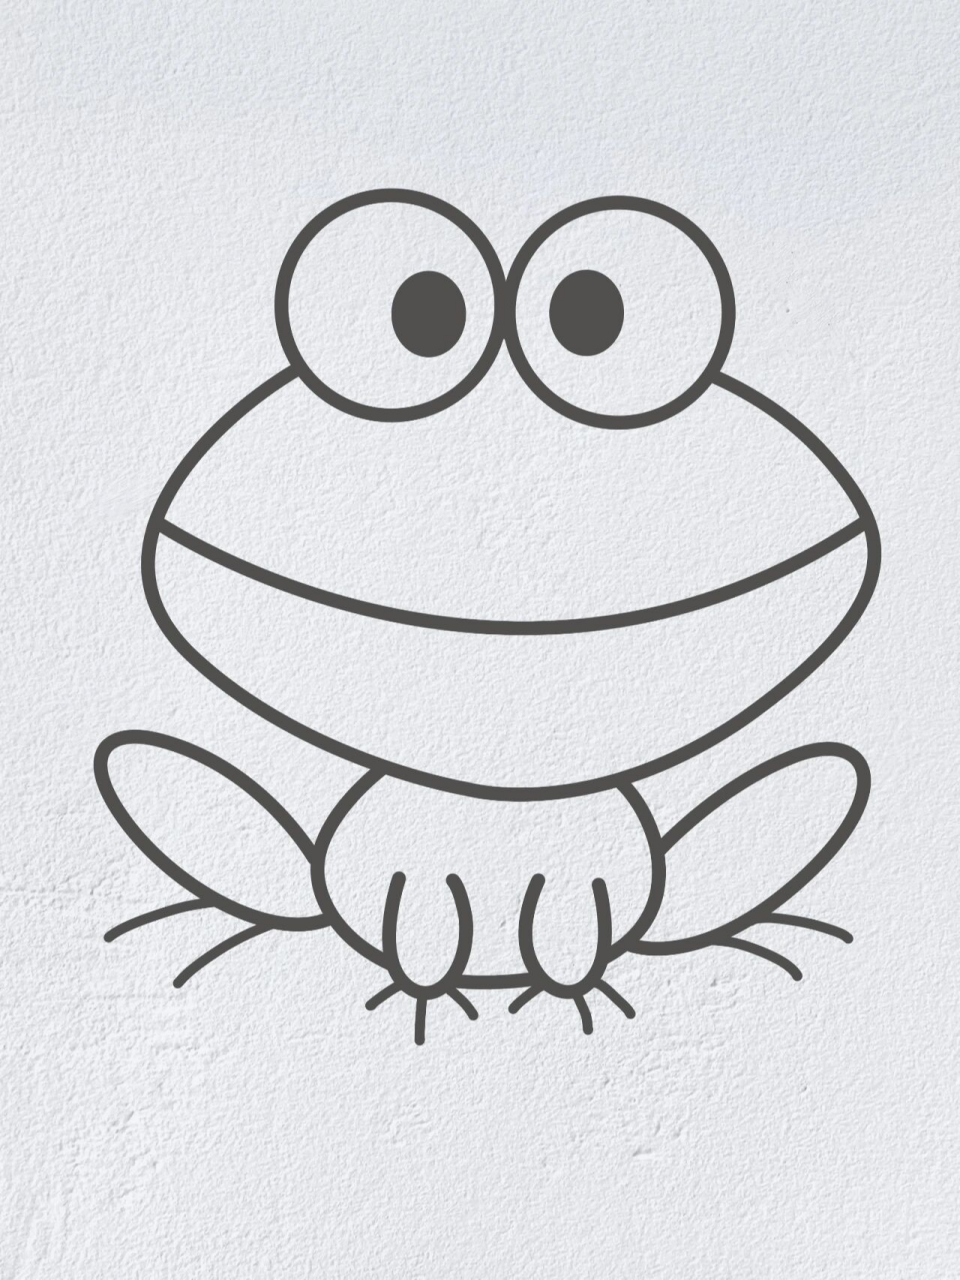 简笔画青蛙可爱图片